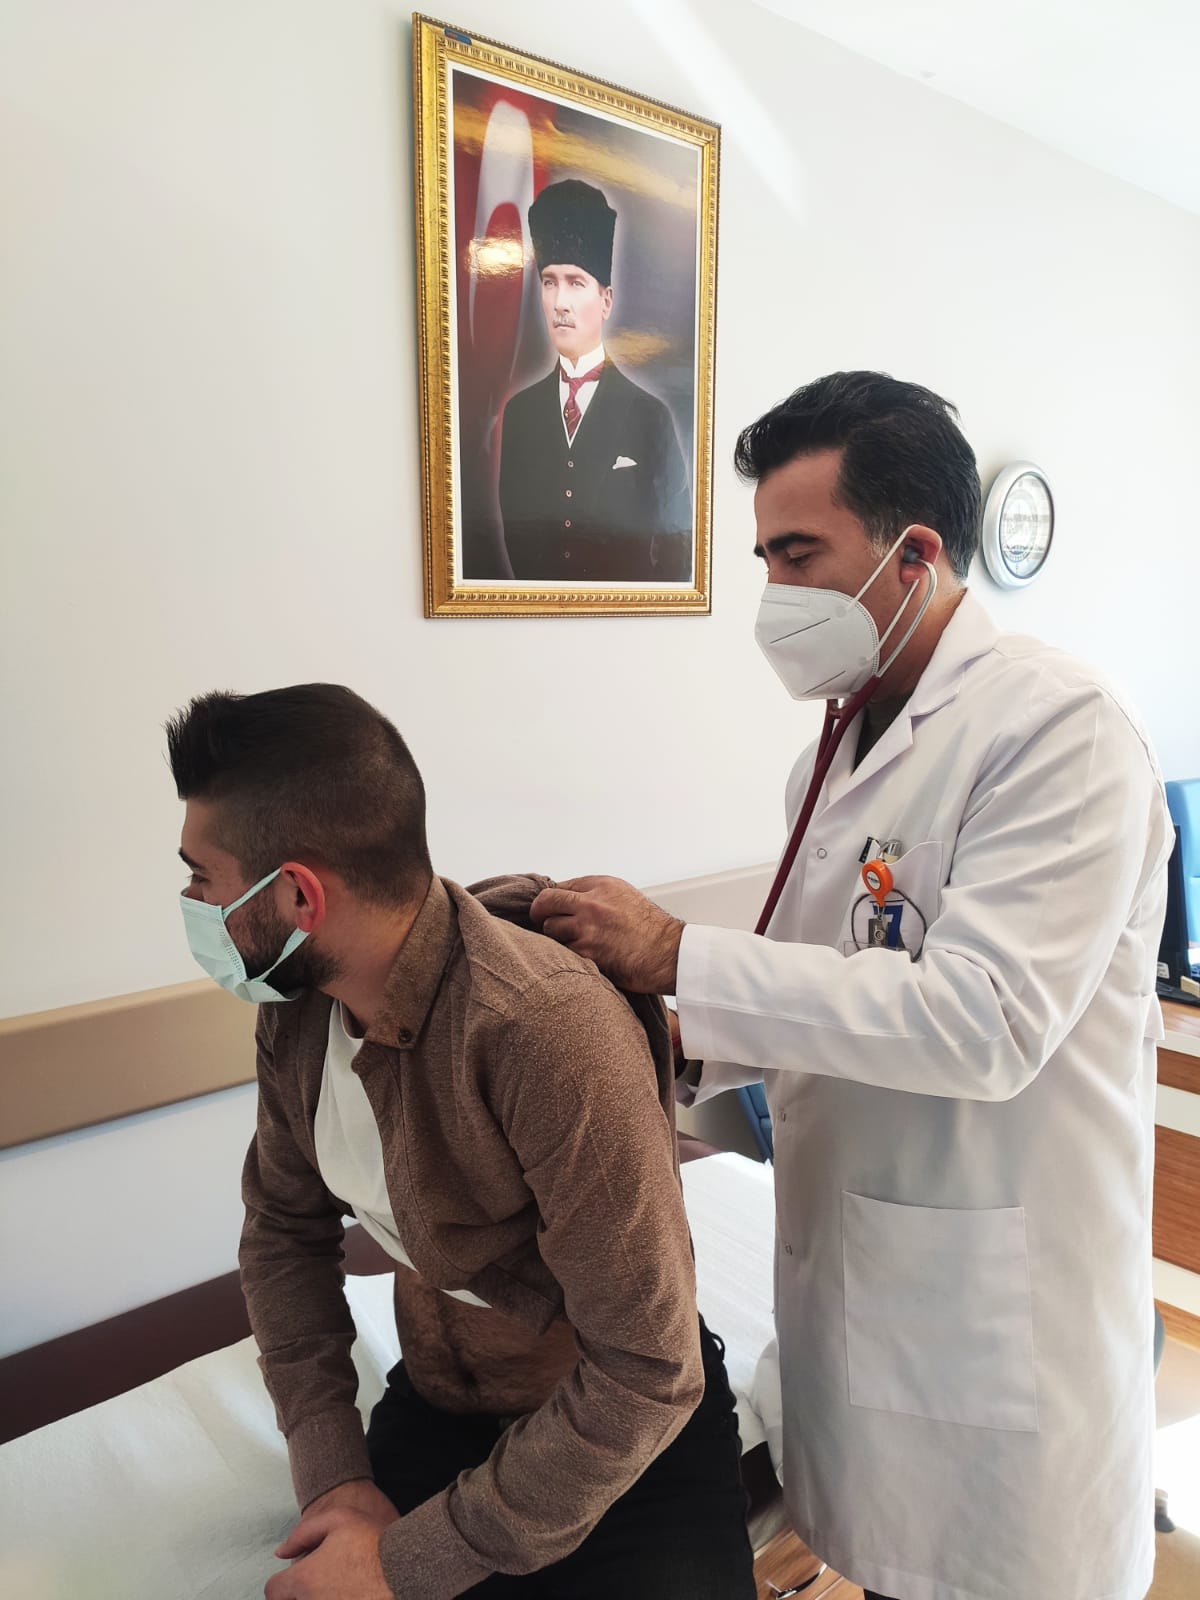 7m Hastanesi Dahiliye Uzm. Dr. Alptekin Duman uyardı! "Grip vakaları hızla artıyor"